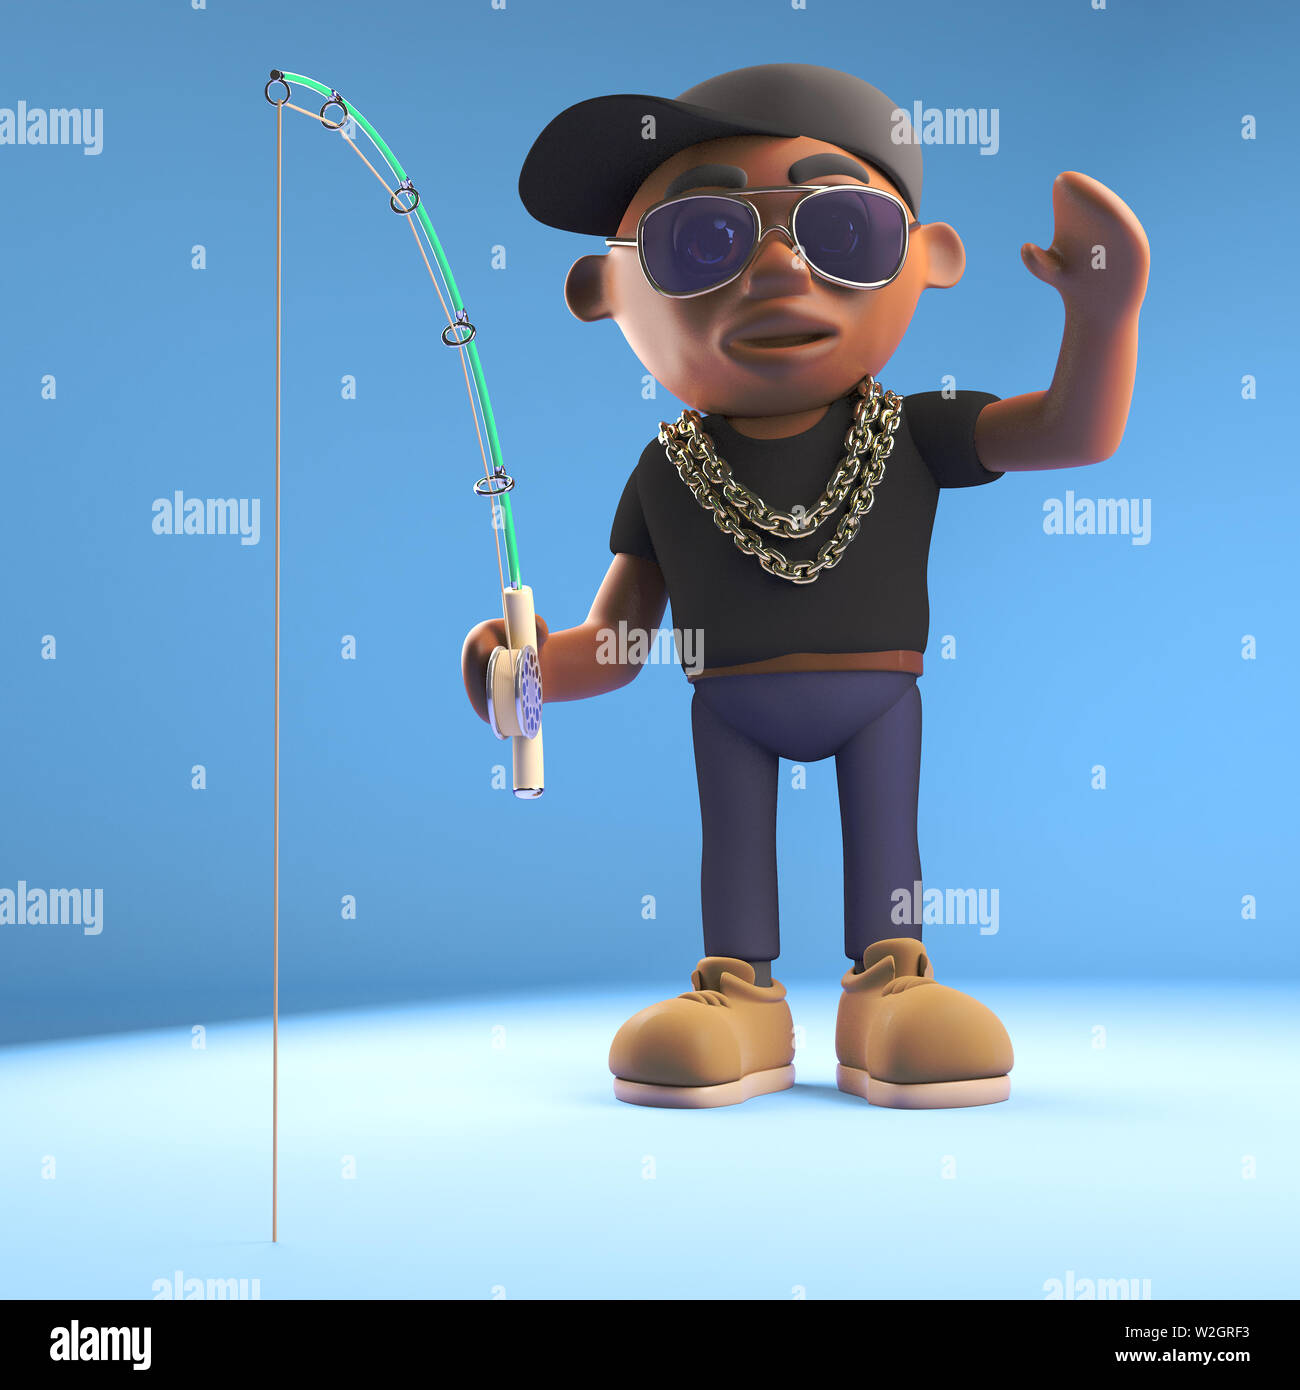 Le rappeur hiphop noir se détend en pêche, illustration 3D render Banque D'Images